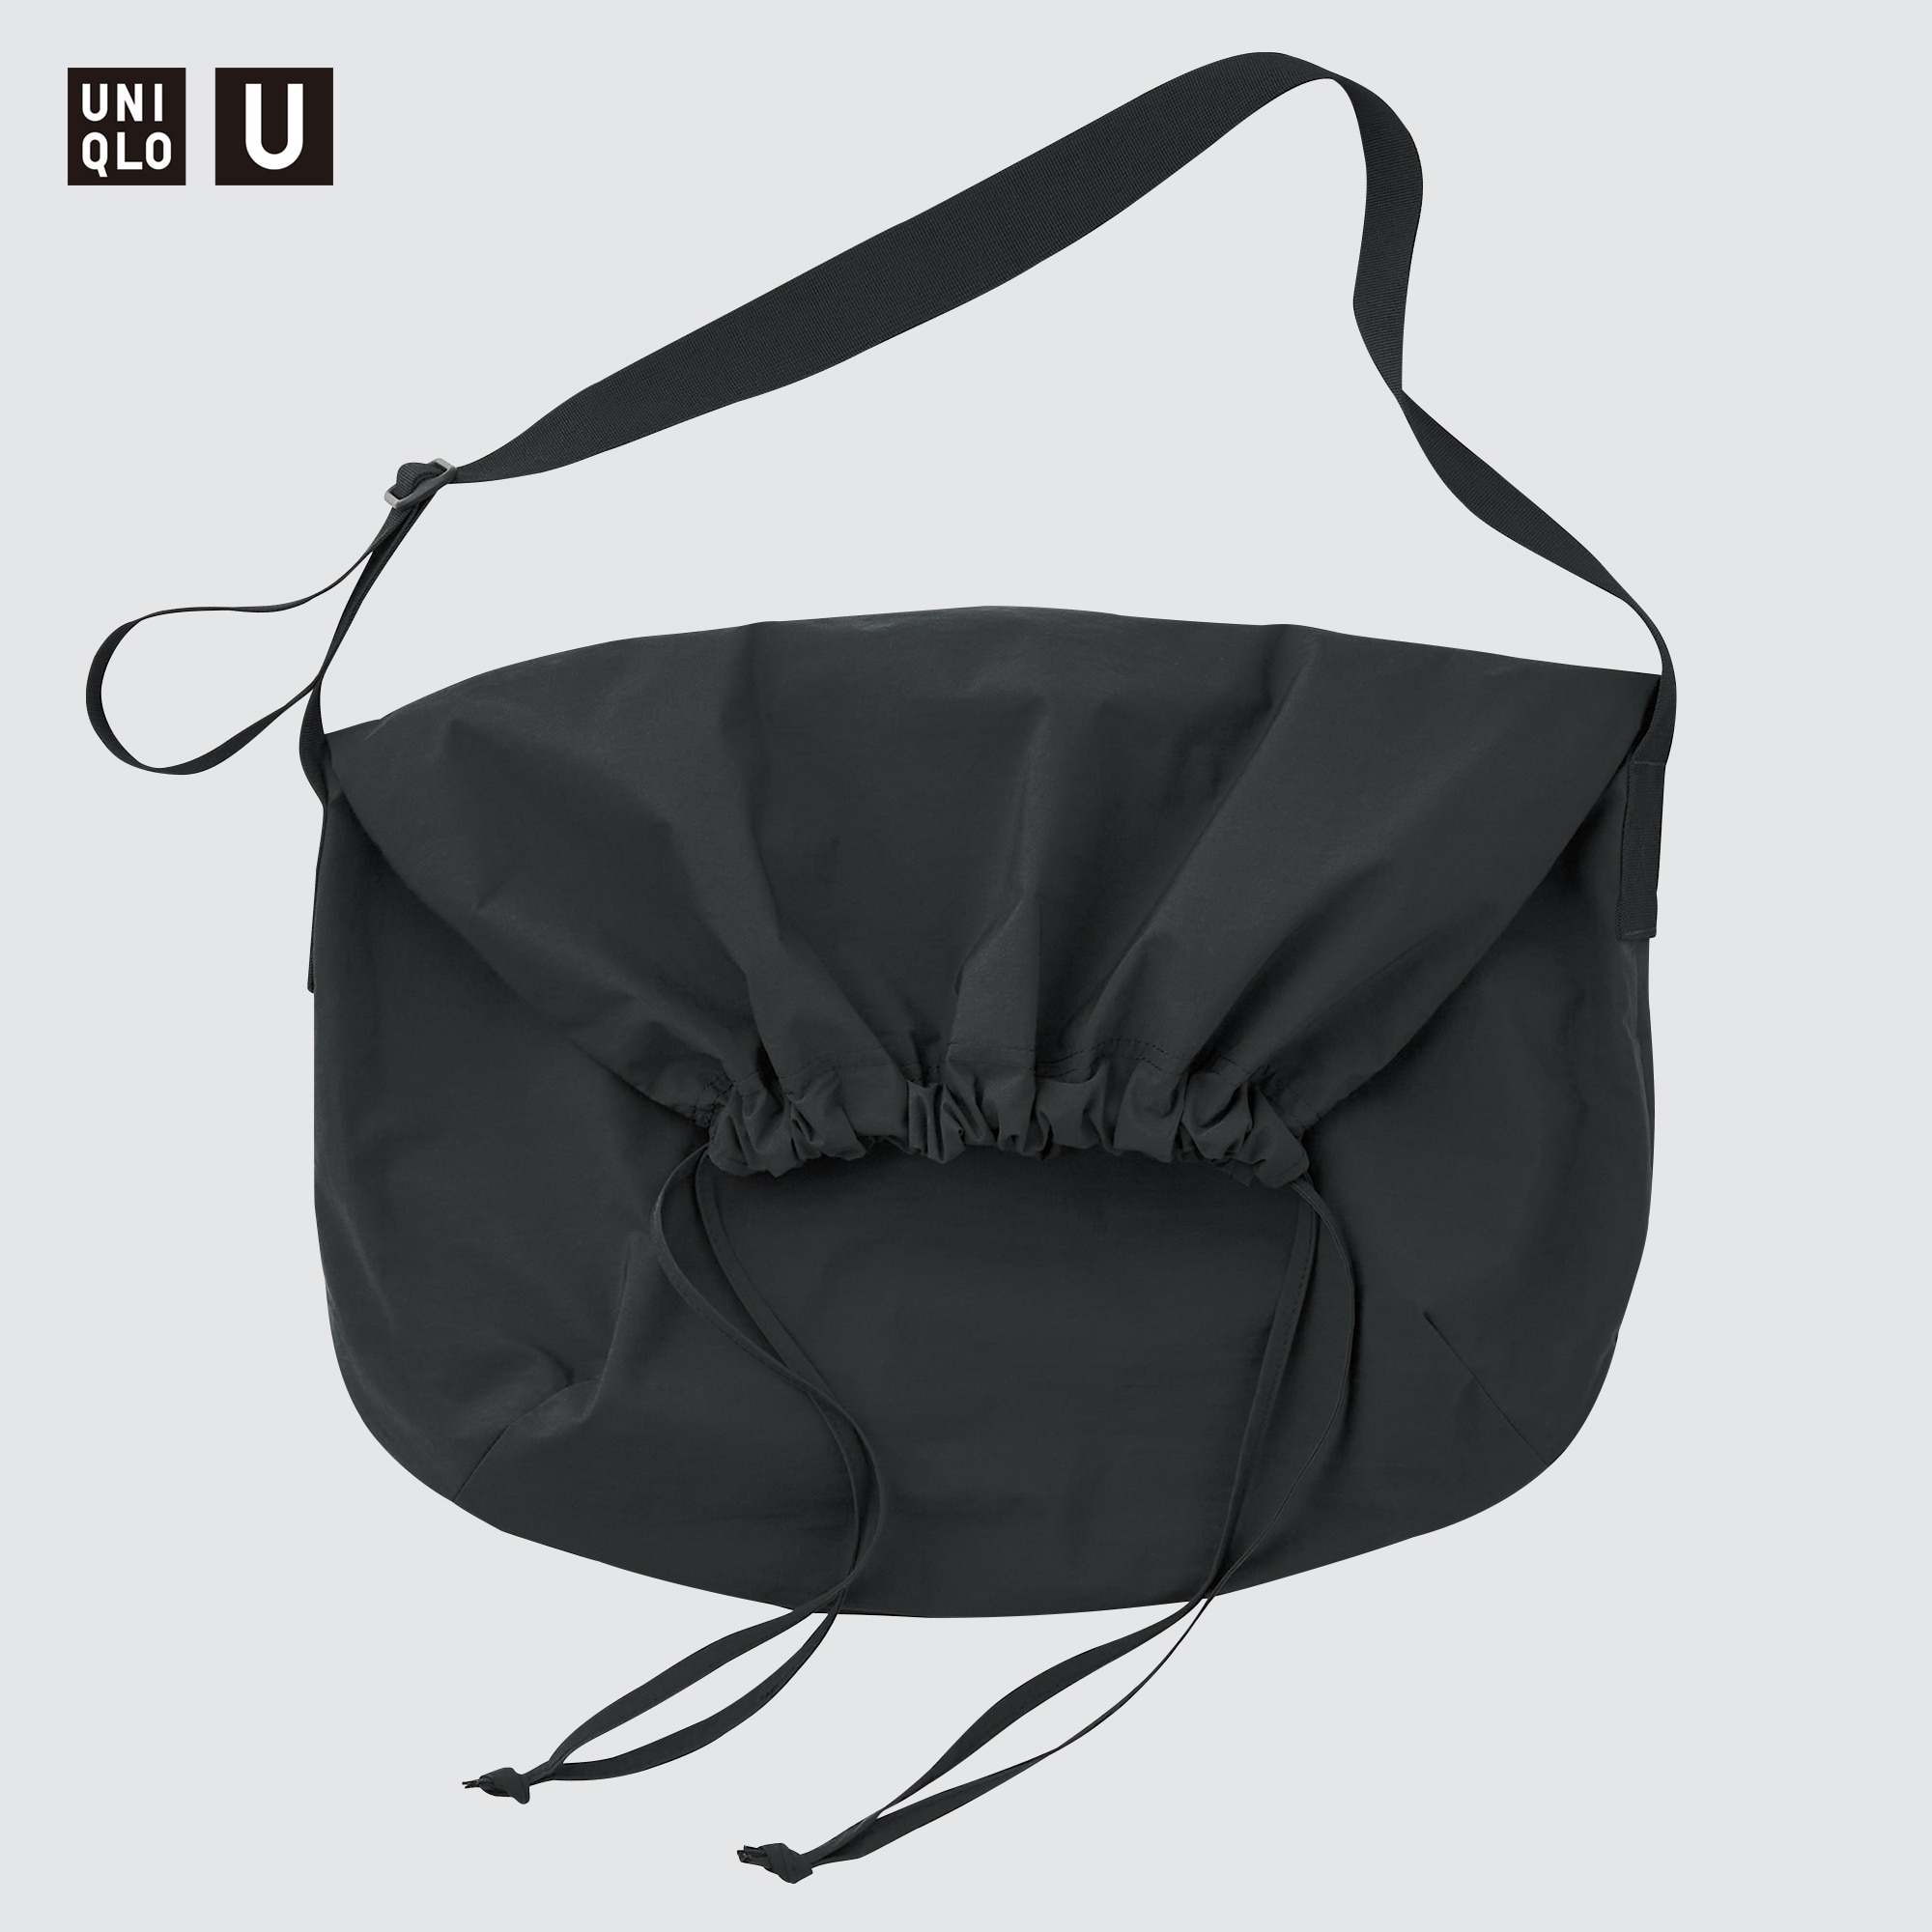 Uniqlo U shoulder bag | Shoulder bag, Bags, Clothes design